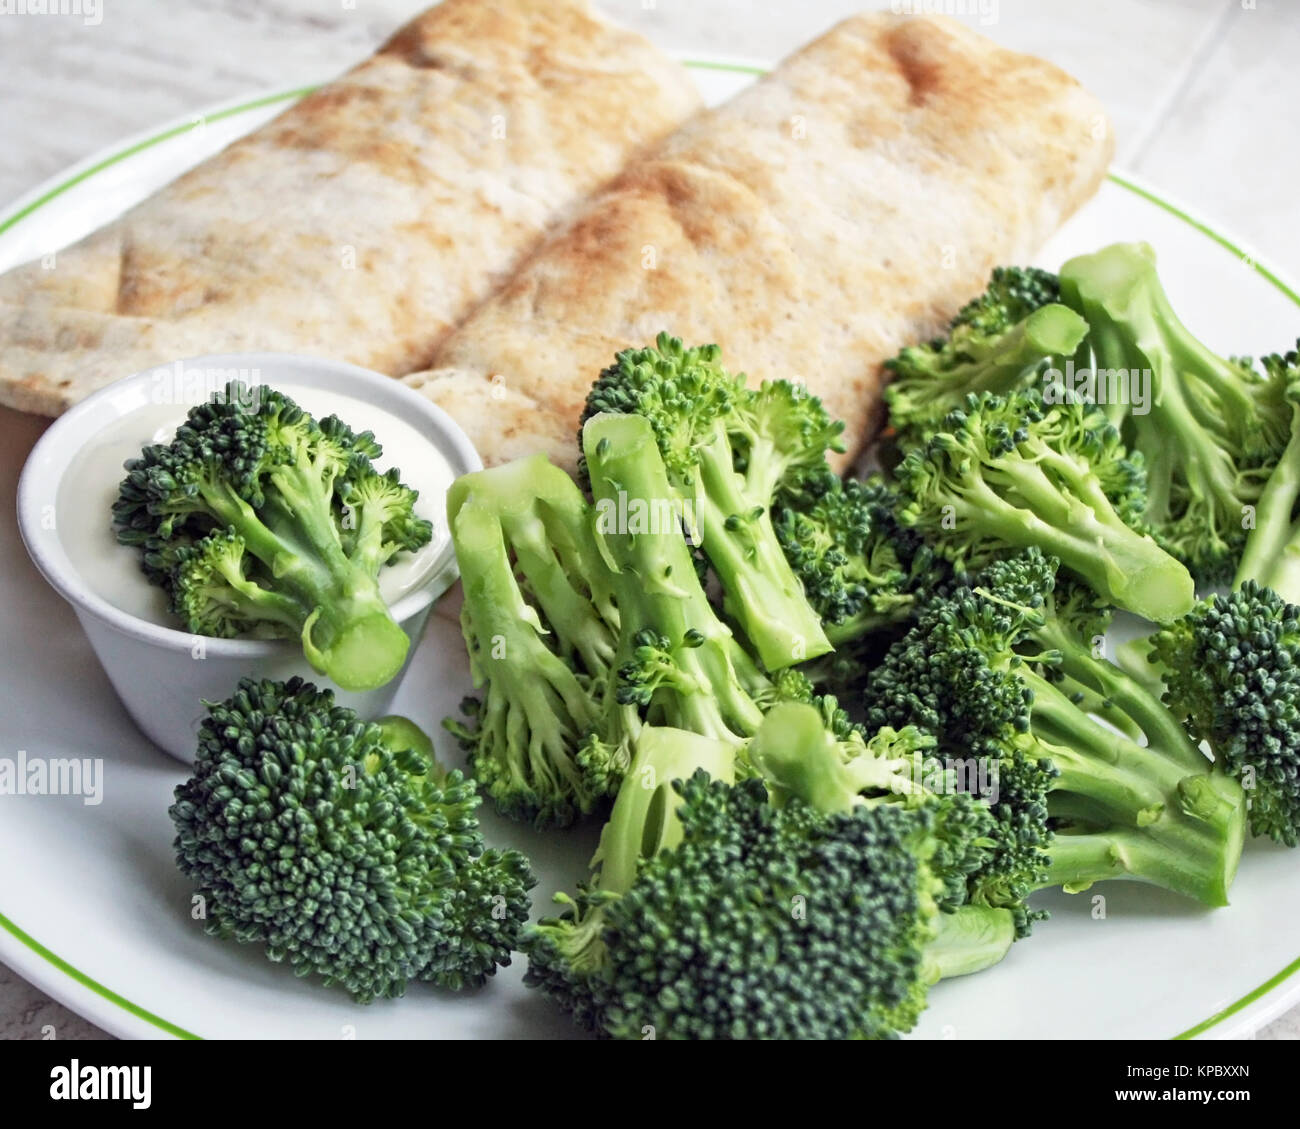 Zwei gefüllte Tortilla Wraps mit einer Seite der frischen Brokkoli und ein Container für cremige Dressing zum Dippen Stockfoto